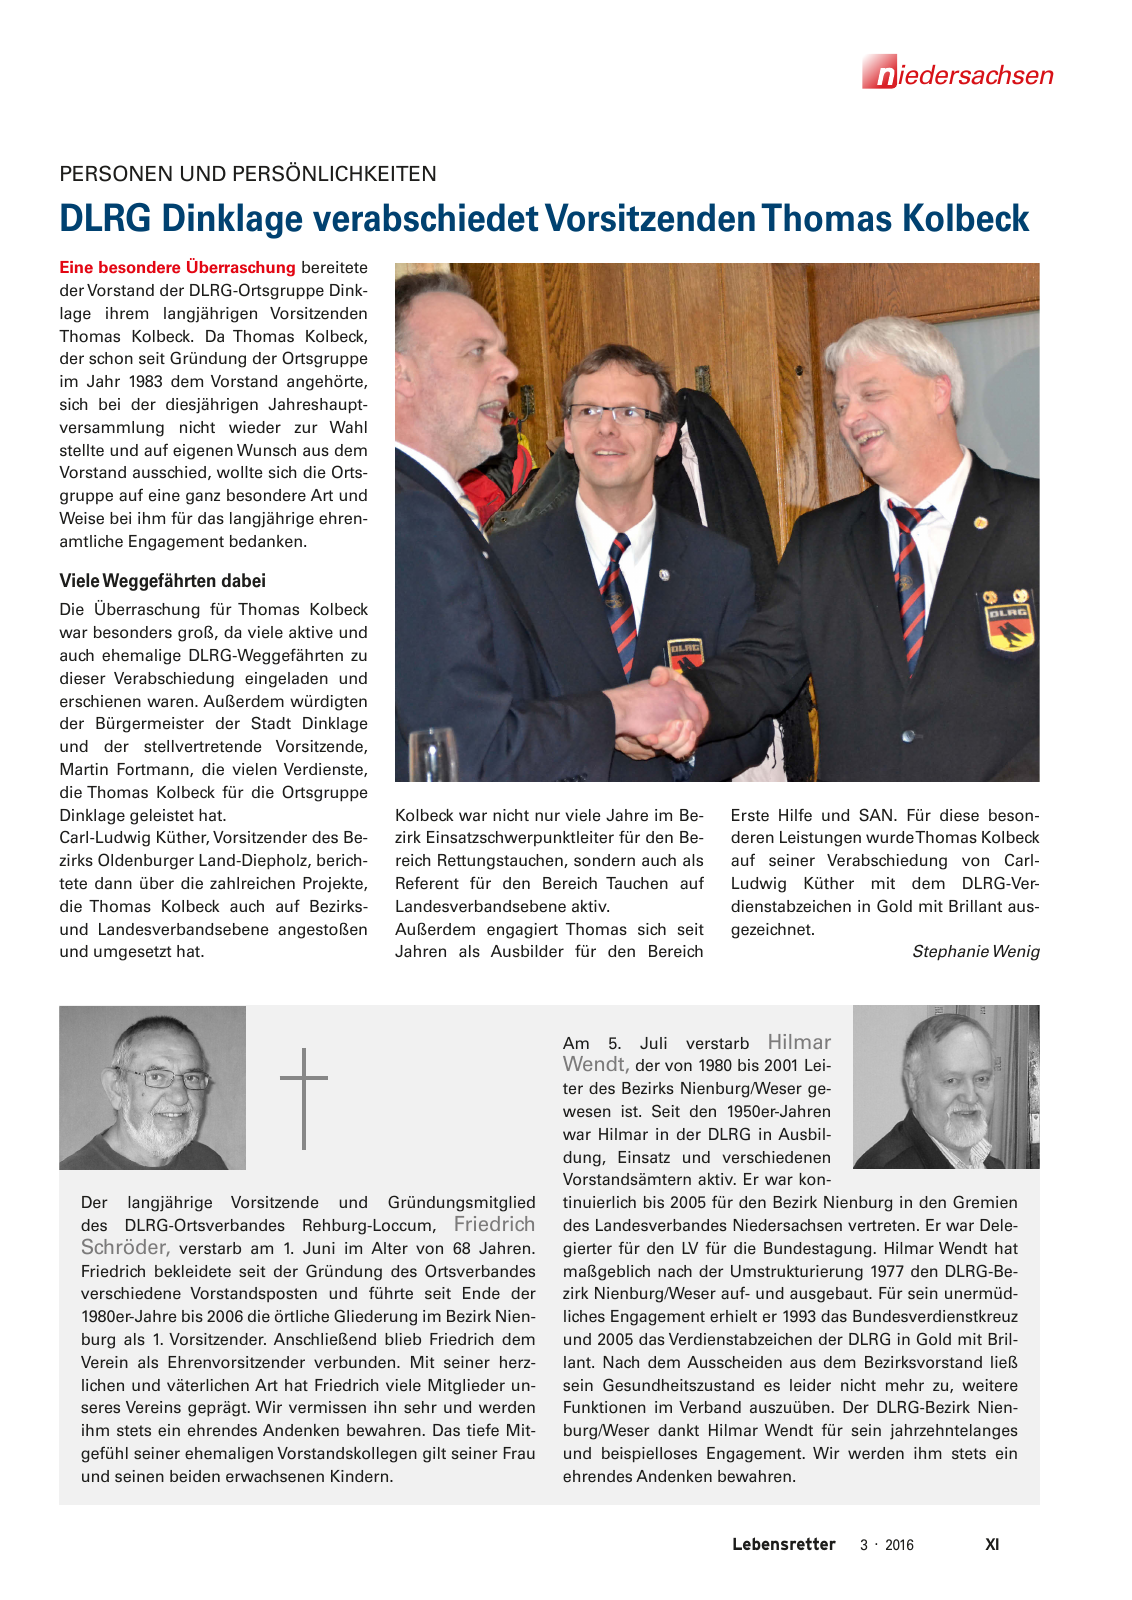 Vorschau Lebensretter 3/2016 - Regionalausgabe Niedersachsen Seite 13